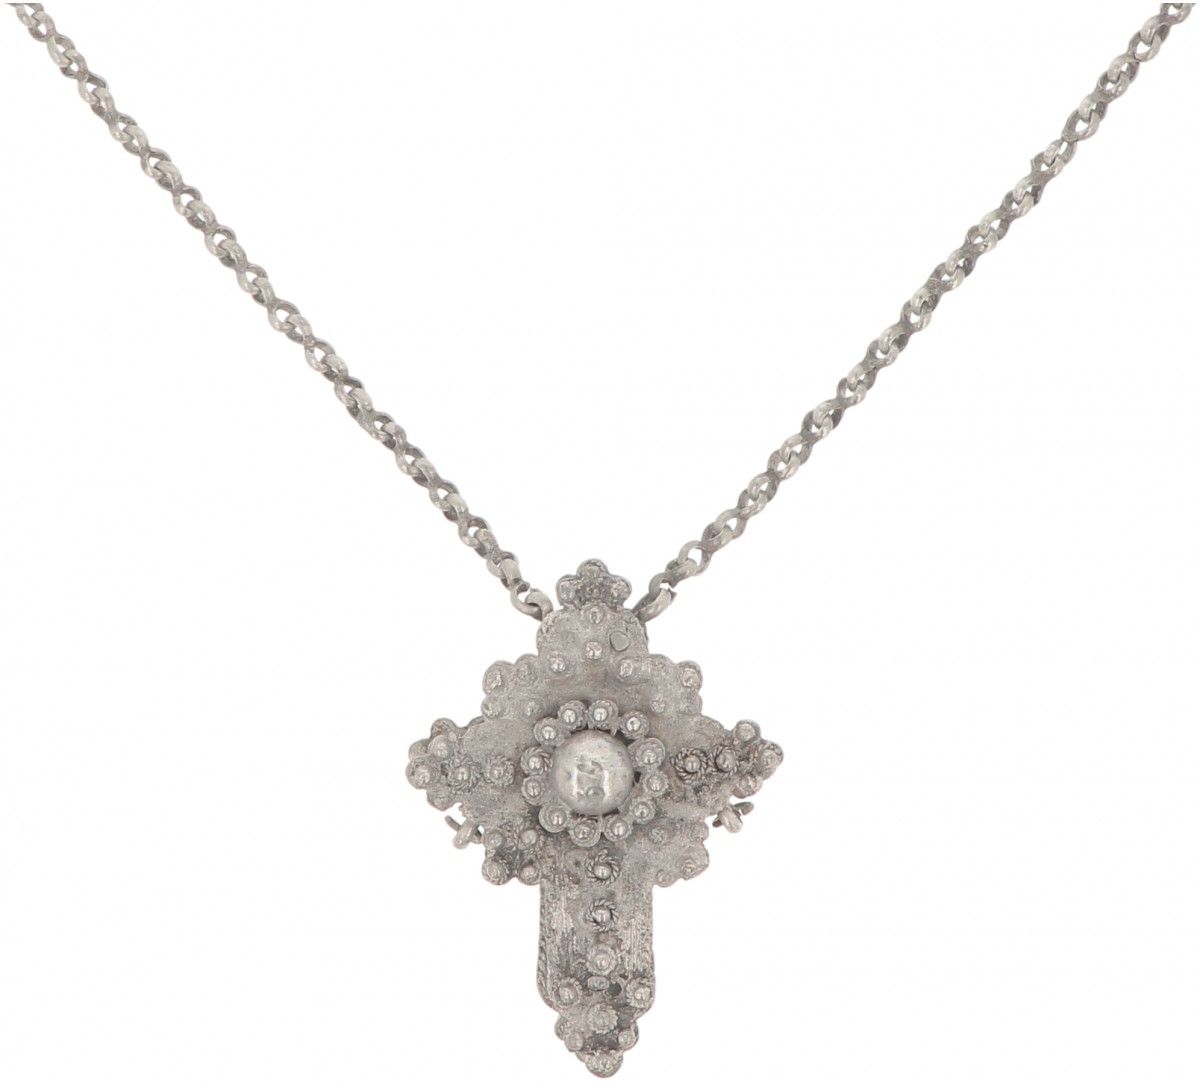 Priest necklace with cross pendant BWG. Ausgestattet mit gelöteten Knopfdekorati&hellip;